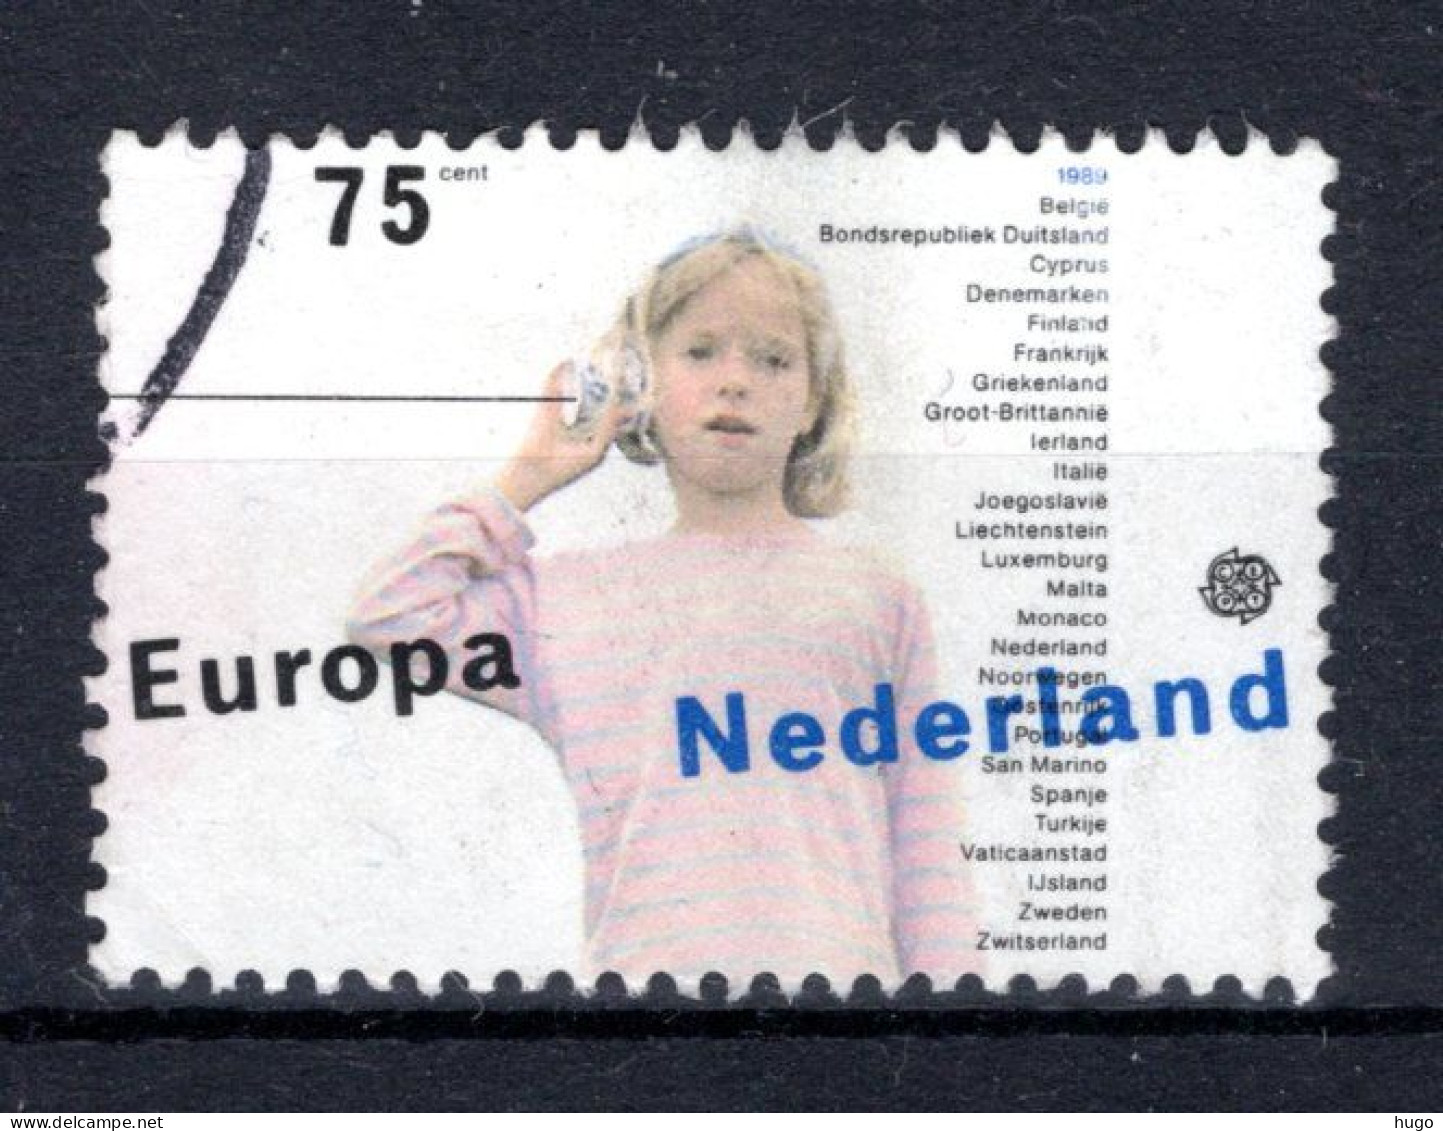 NEDERLAND 1429° Gestempeld 1989 - Europa, Kinderspelen - Gebraucht